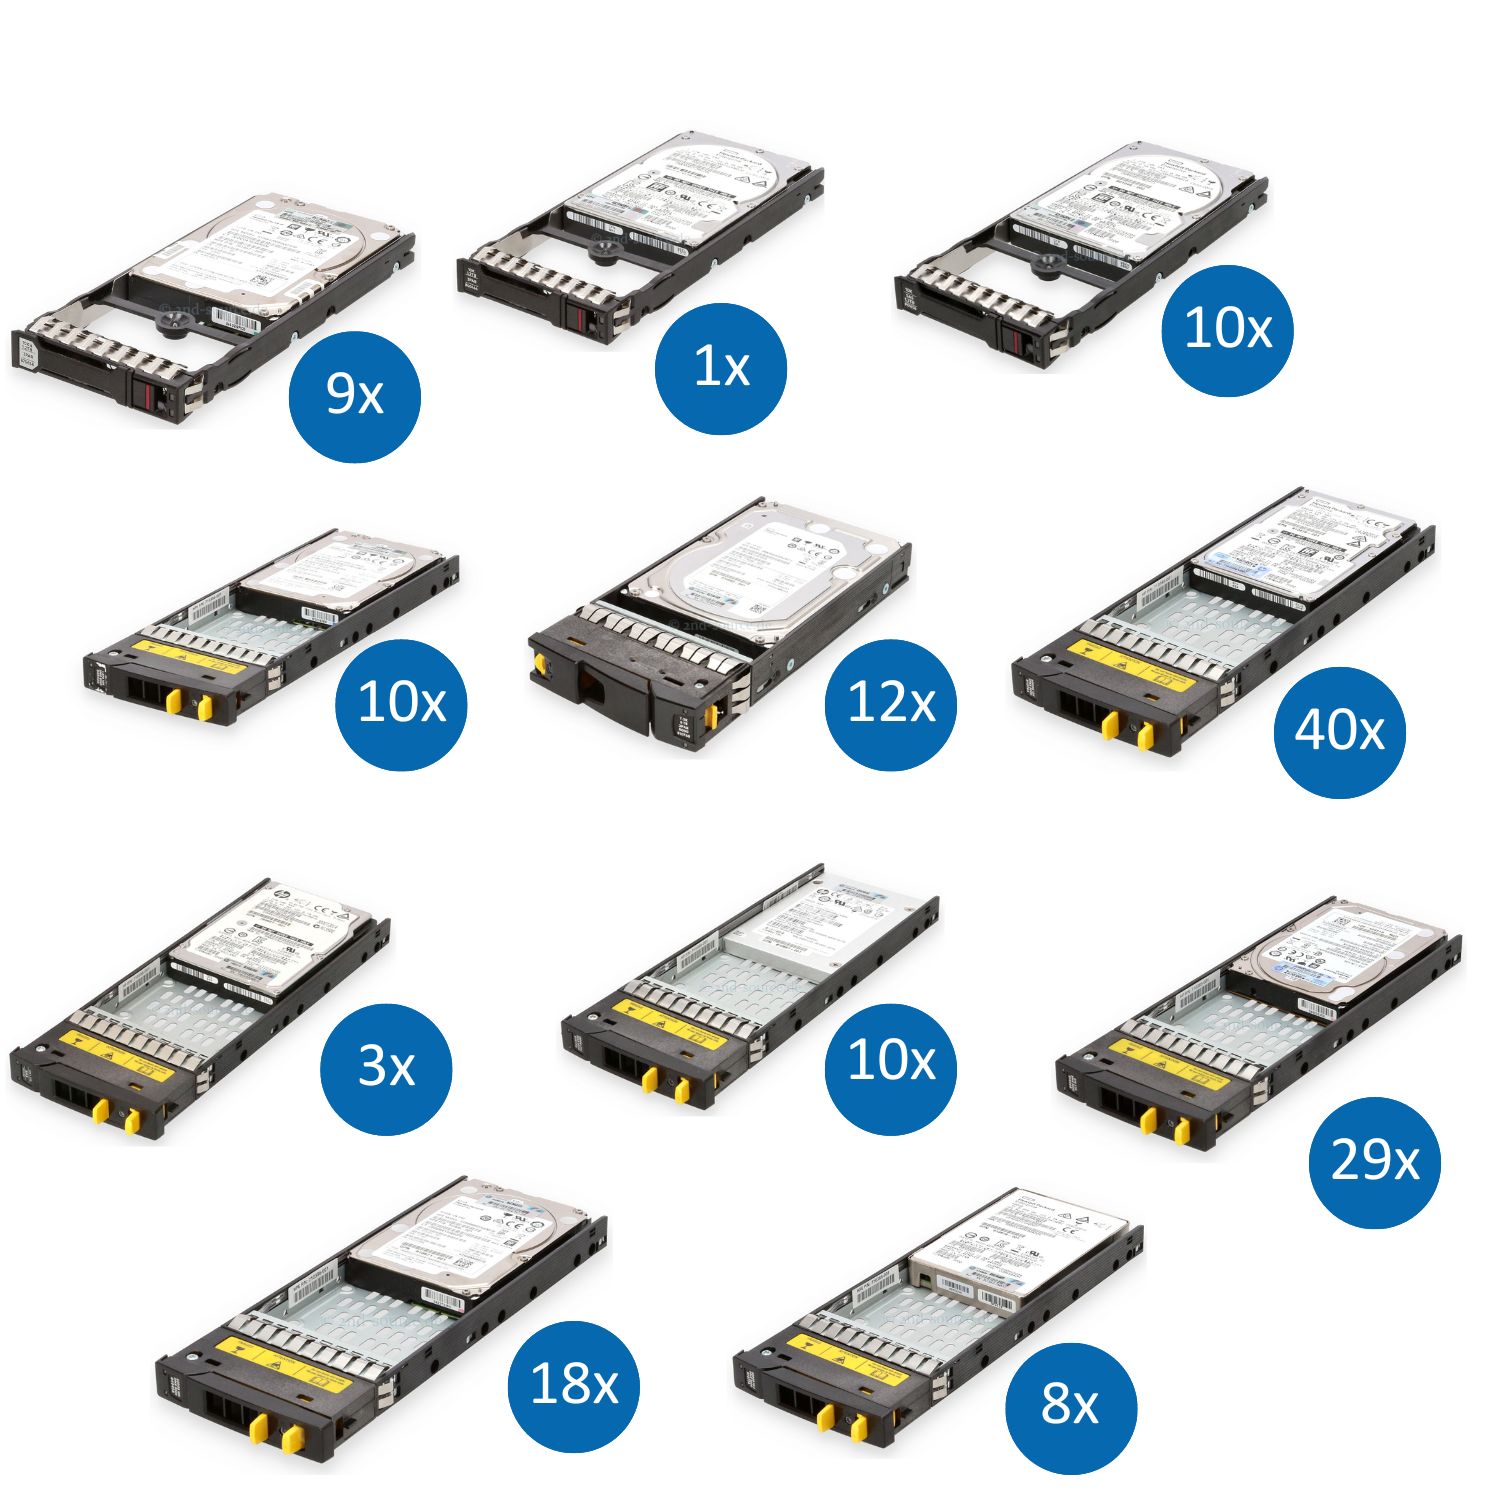 HPE 3PAR Bundle 150x HDD/SSD mit 40x 600GB 15k SAS 12G 29x 2TB 7.2k SAS 12G 18x 600GB 10k SAS 12G